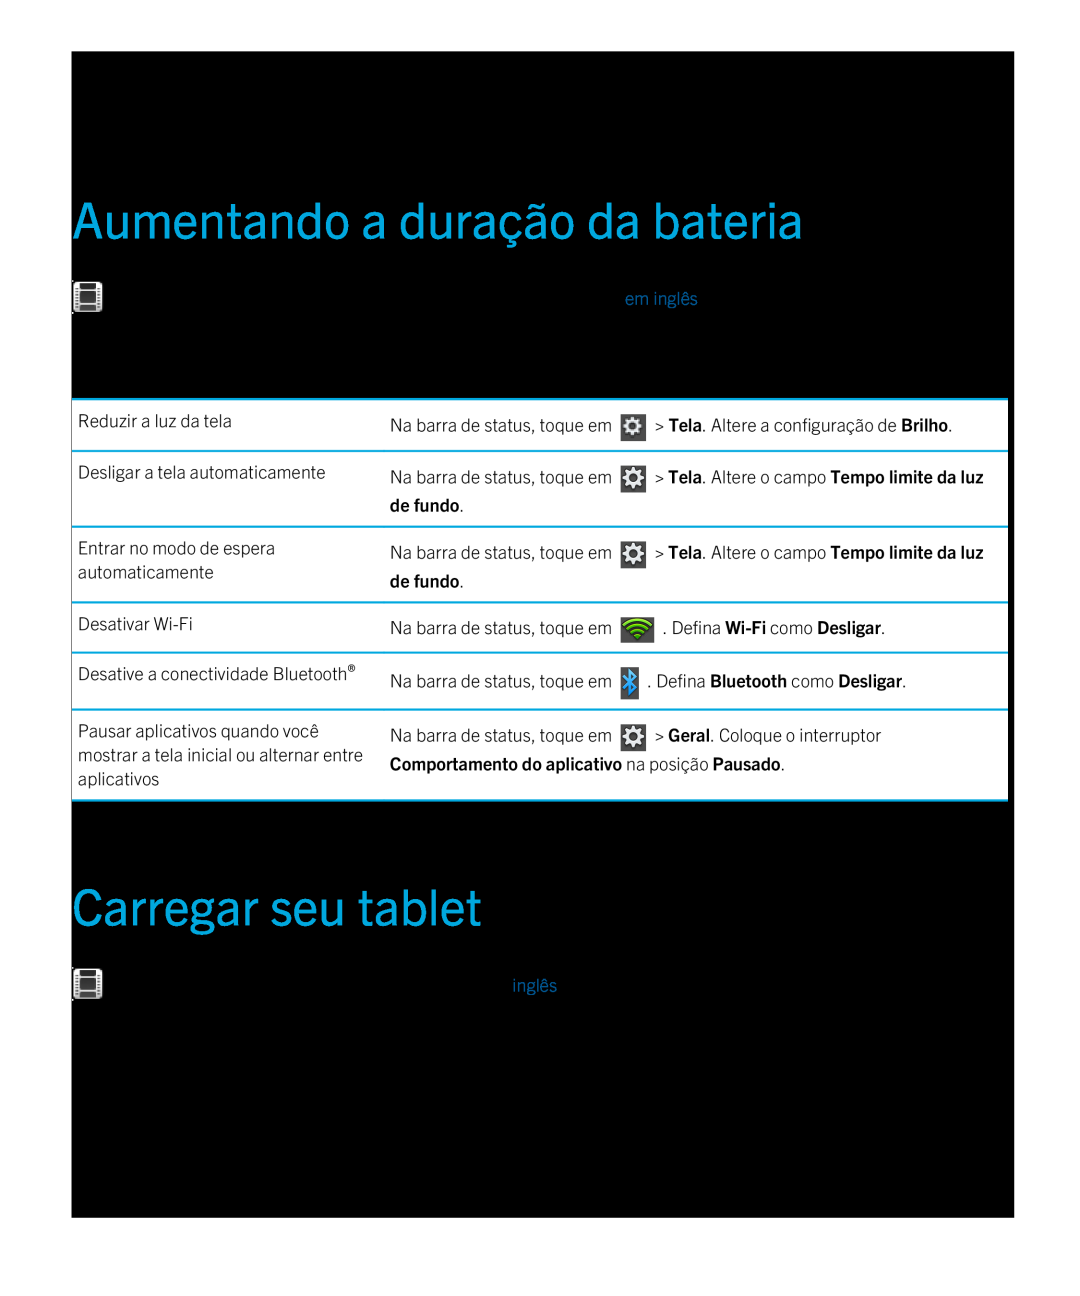 Blackberry 2.0.1 Aumentando a duração da bateria, Carregar seu tablet, Tela. Altere o campo Tempo limite da luz, de fundo 